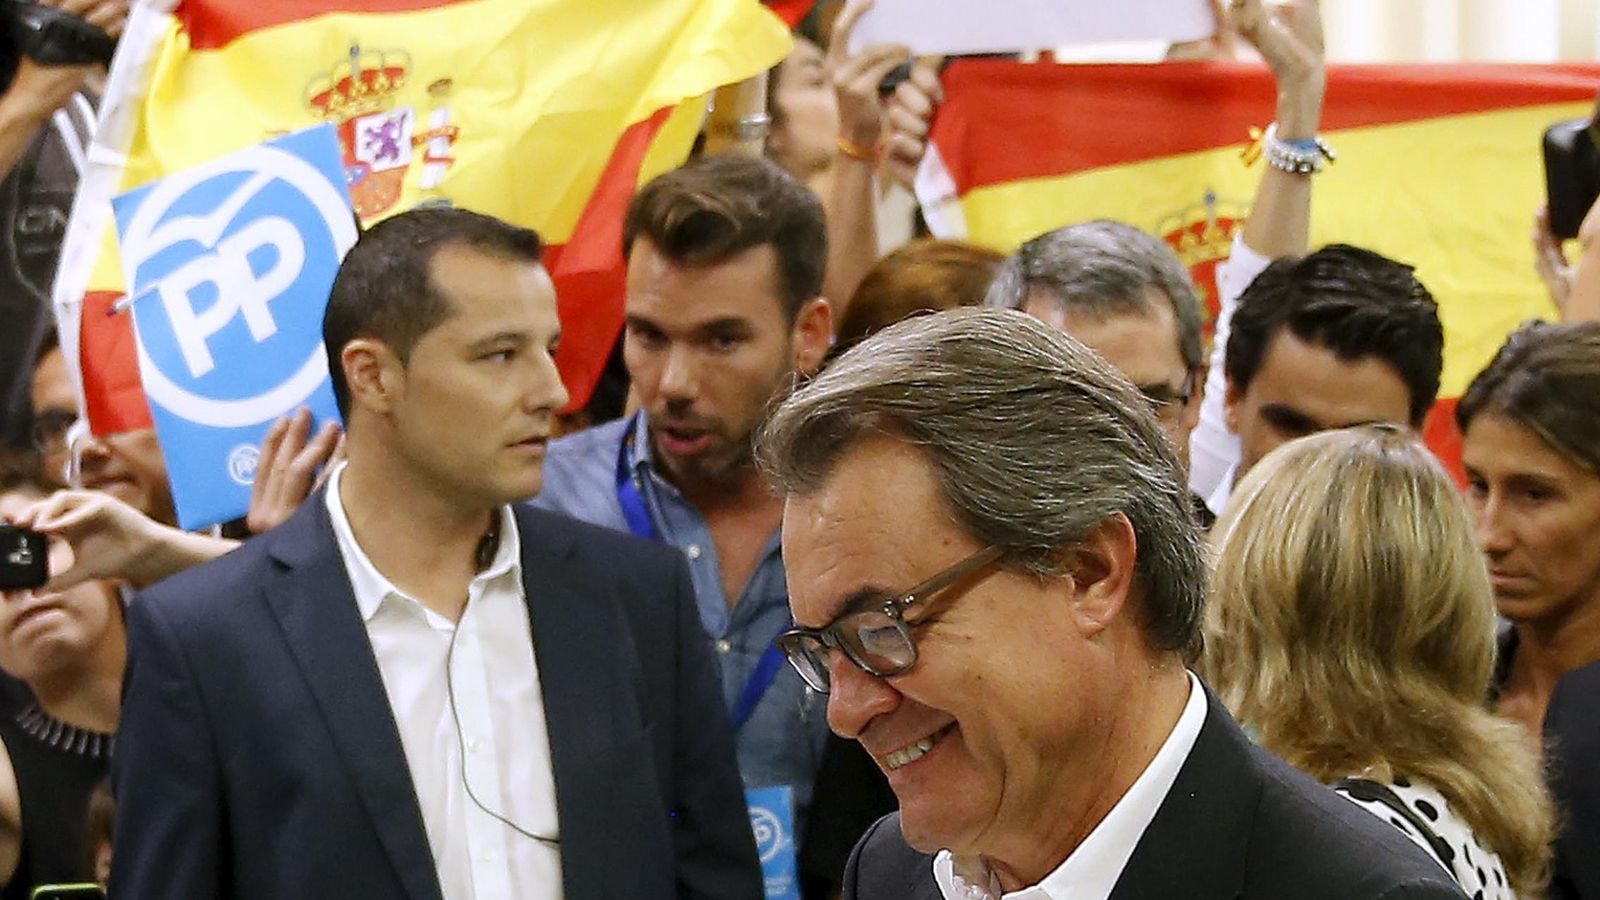 Foto: Un grupo de simpatizantes de Vox increpa a Artur Mas en el colegio electoral (REUTERS)